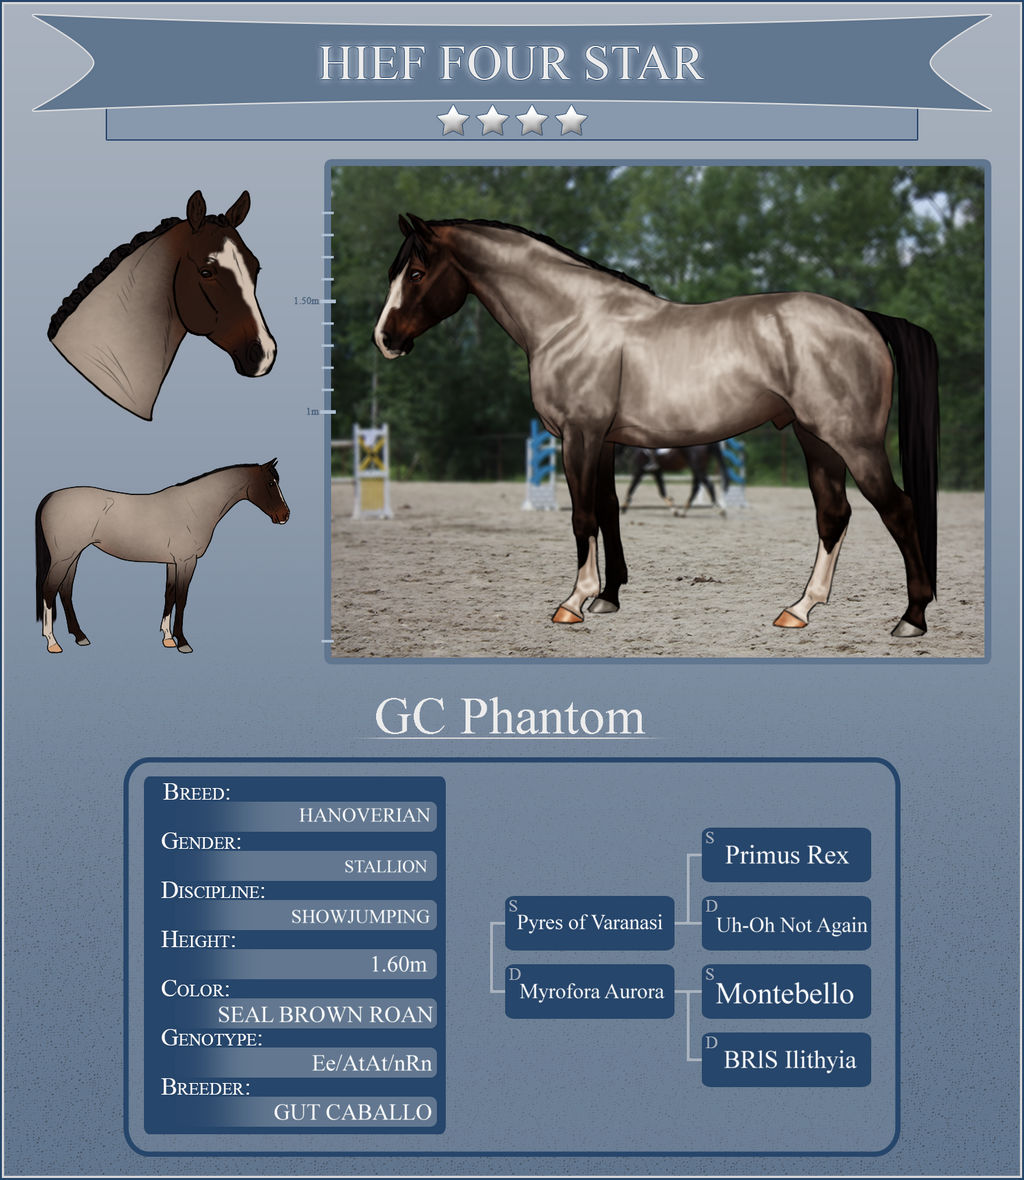 GC Phantom - Four star H-I-E-F